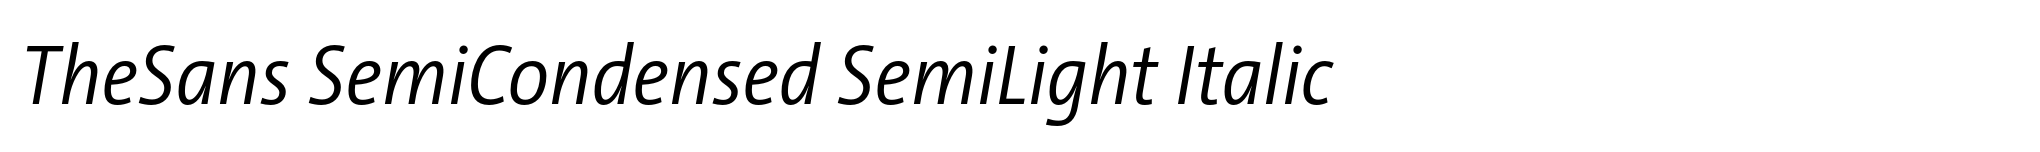 TheSans SemiCondensed SemiLight Italic image